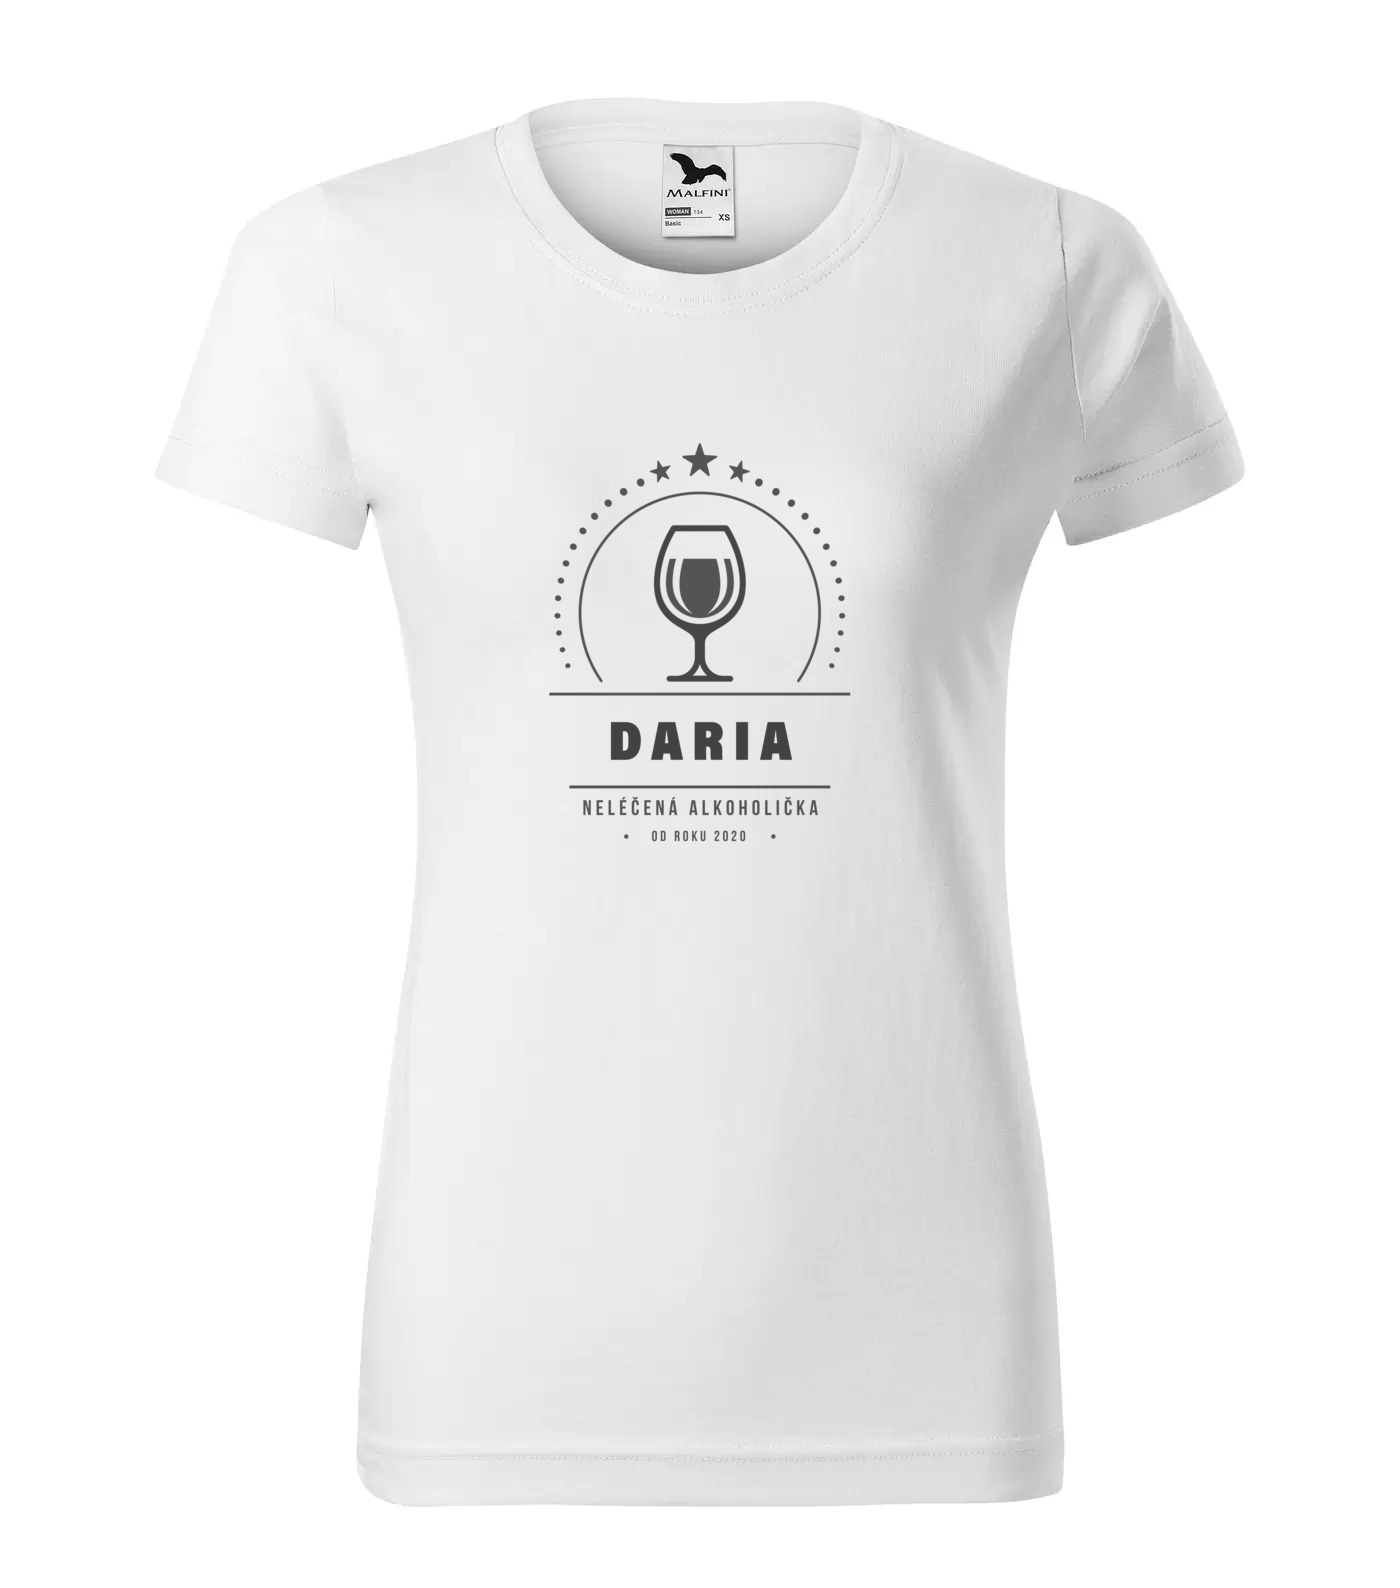 Tričko Alkoholička Daria